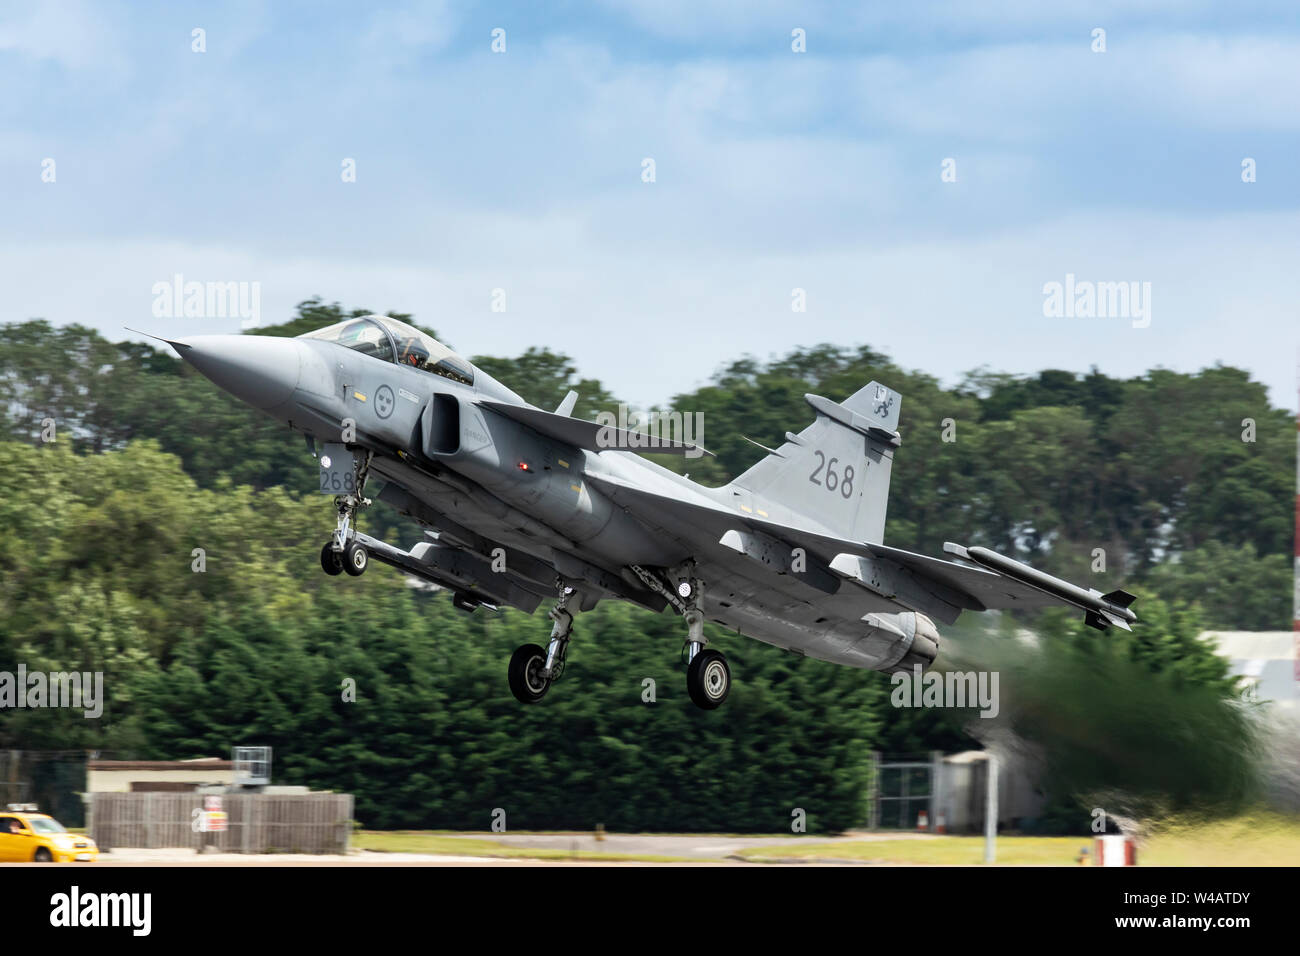 Armée de l'air suédoise Saab Gripen battant le 20 juillet 2019 à RIAT 2019, RAF Fairford, Gloucestershire, Royaume-Uni Banque D'Images